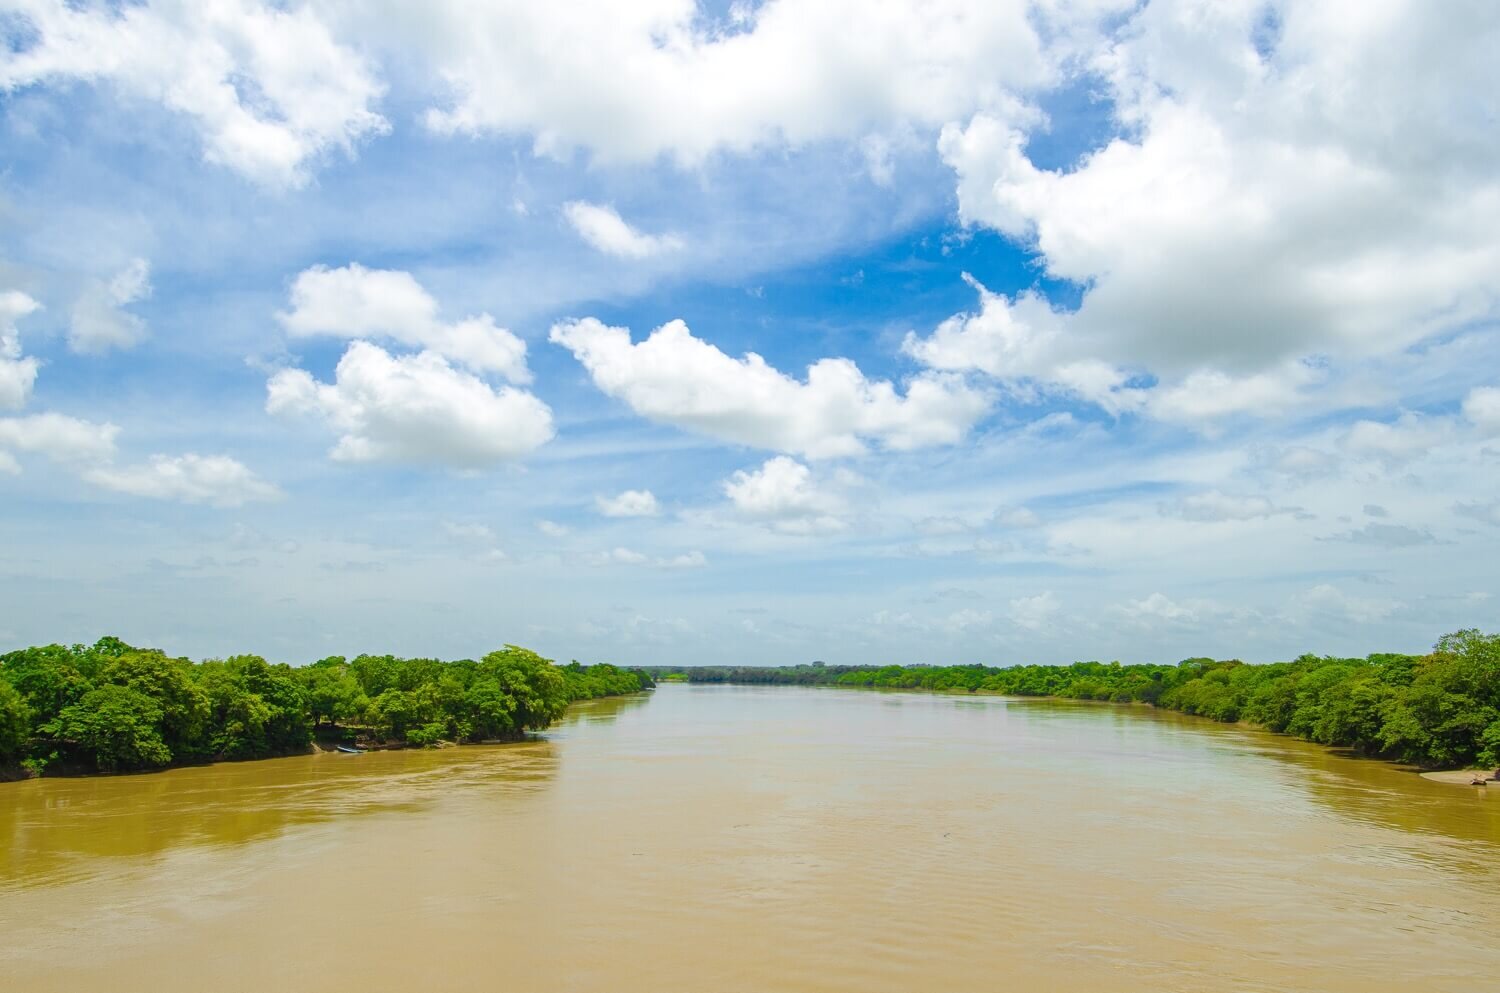 Río Usumacinta visto desde el puente de Boca del Cerro. Turismo en Tabasco.